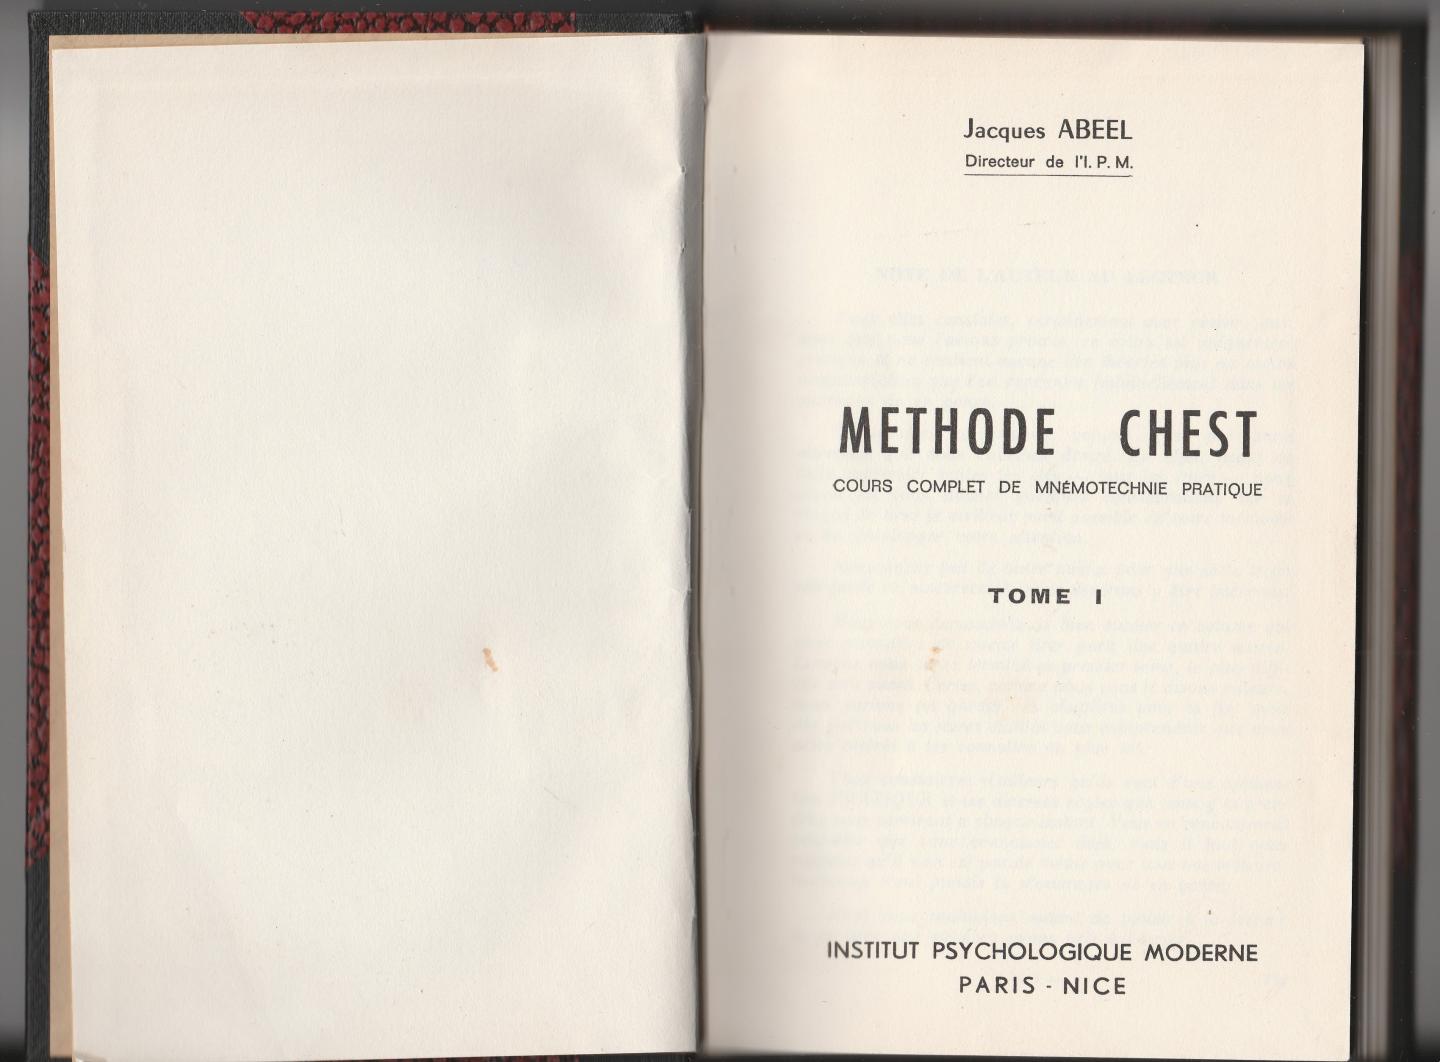 Abeel, Jacques - Methode Chest, cours complet de mnémotechnie pratique, tome 1 - 5